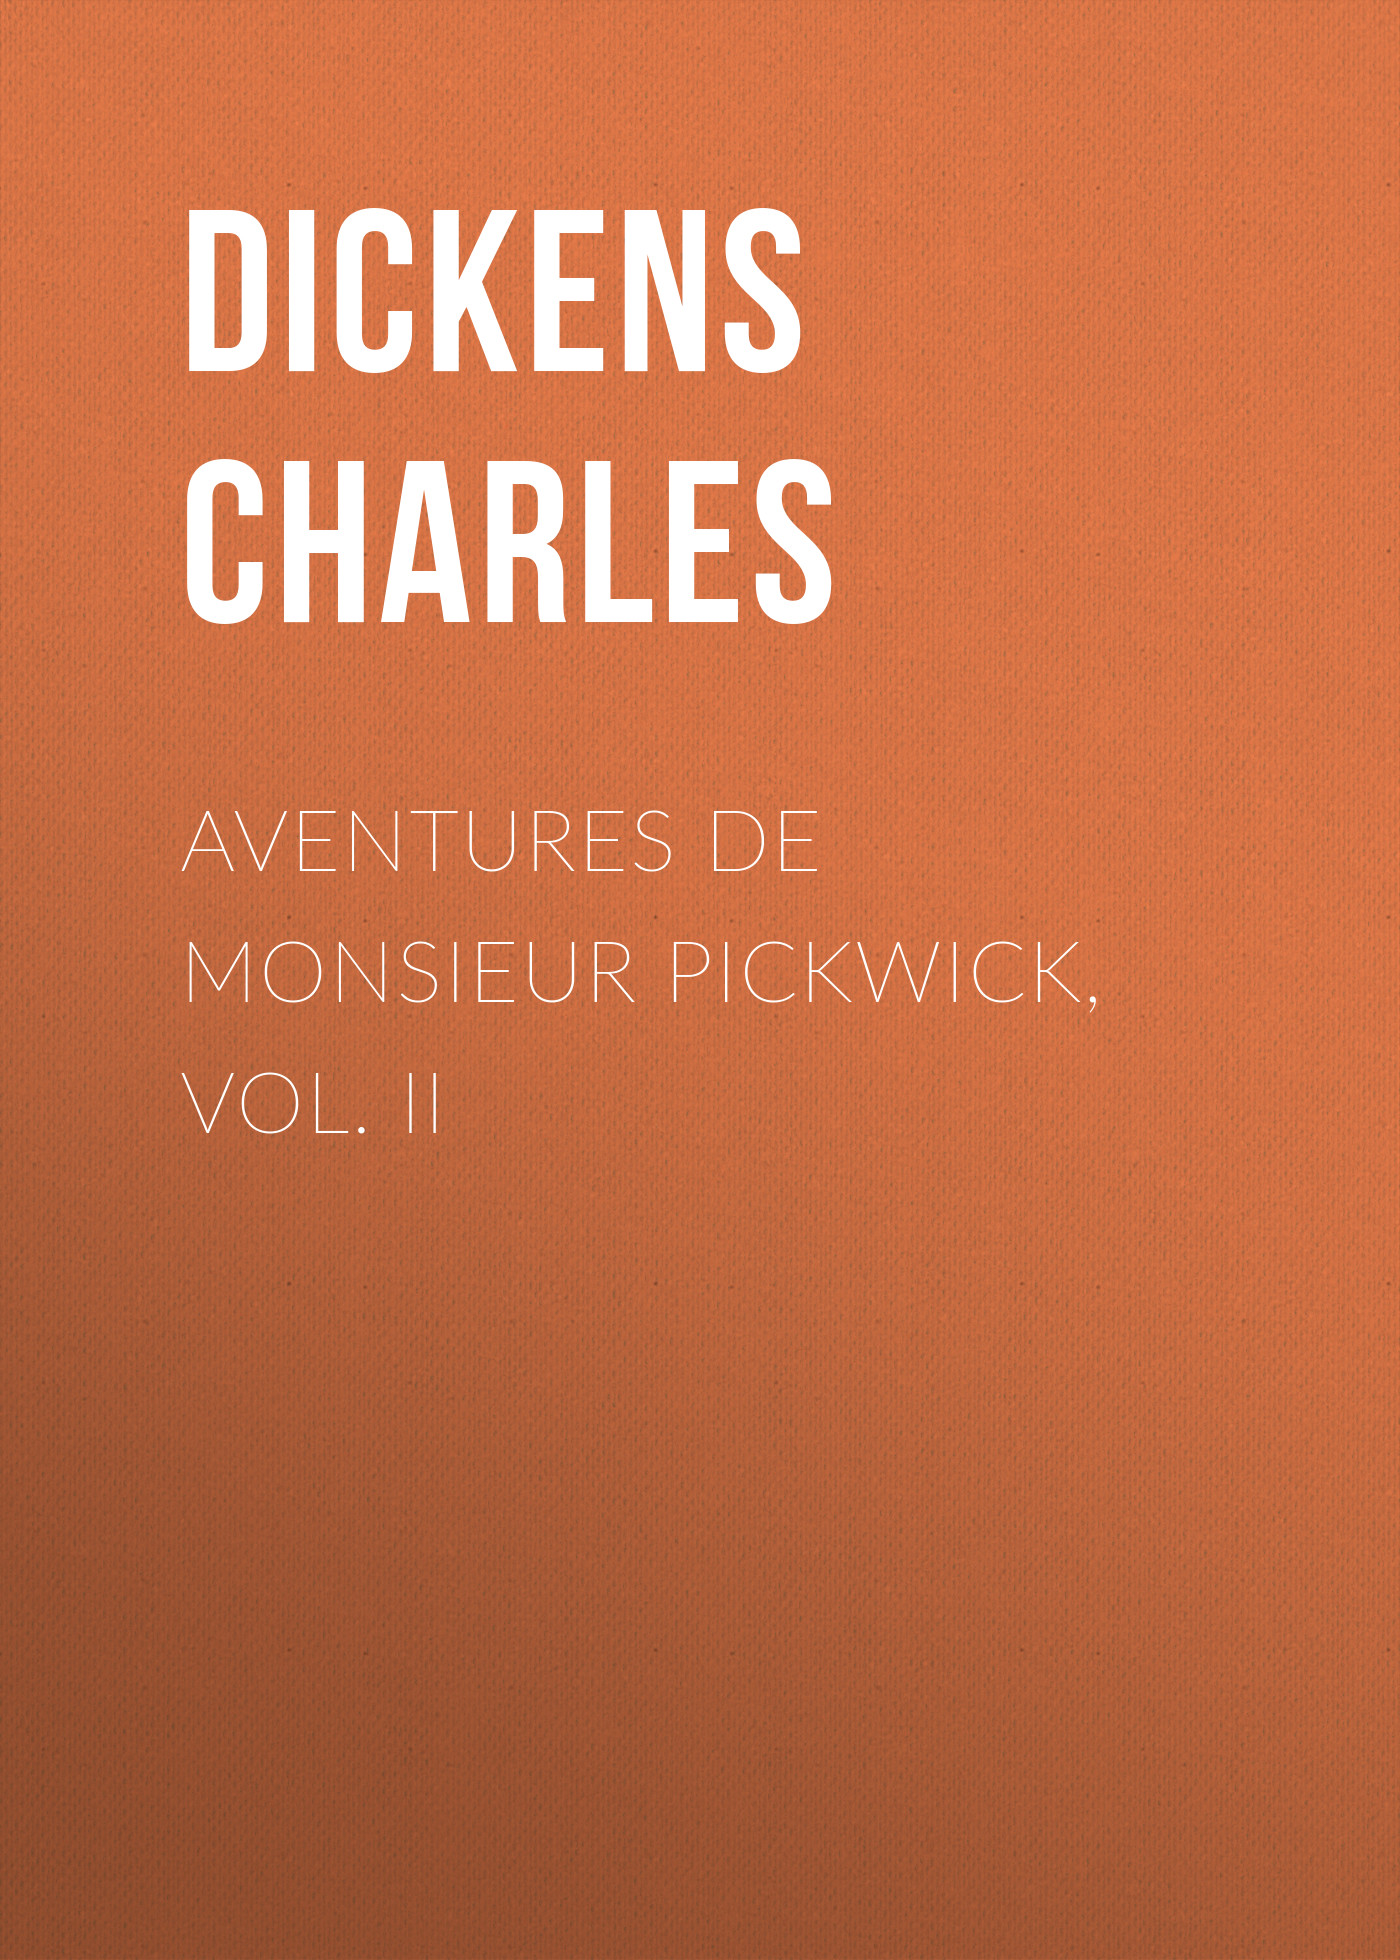 Книга Aventures de Monsieur Pickwick, Vol. II из серии , созданная Charles Dickens, может относится к жанру Зарубежная старинная литература, Зарубежная классика. Стоимость электронной книги Aventures de Monsieur Pickwick, Vol. II с идентификатором 25091580 составляет 0 руб.